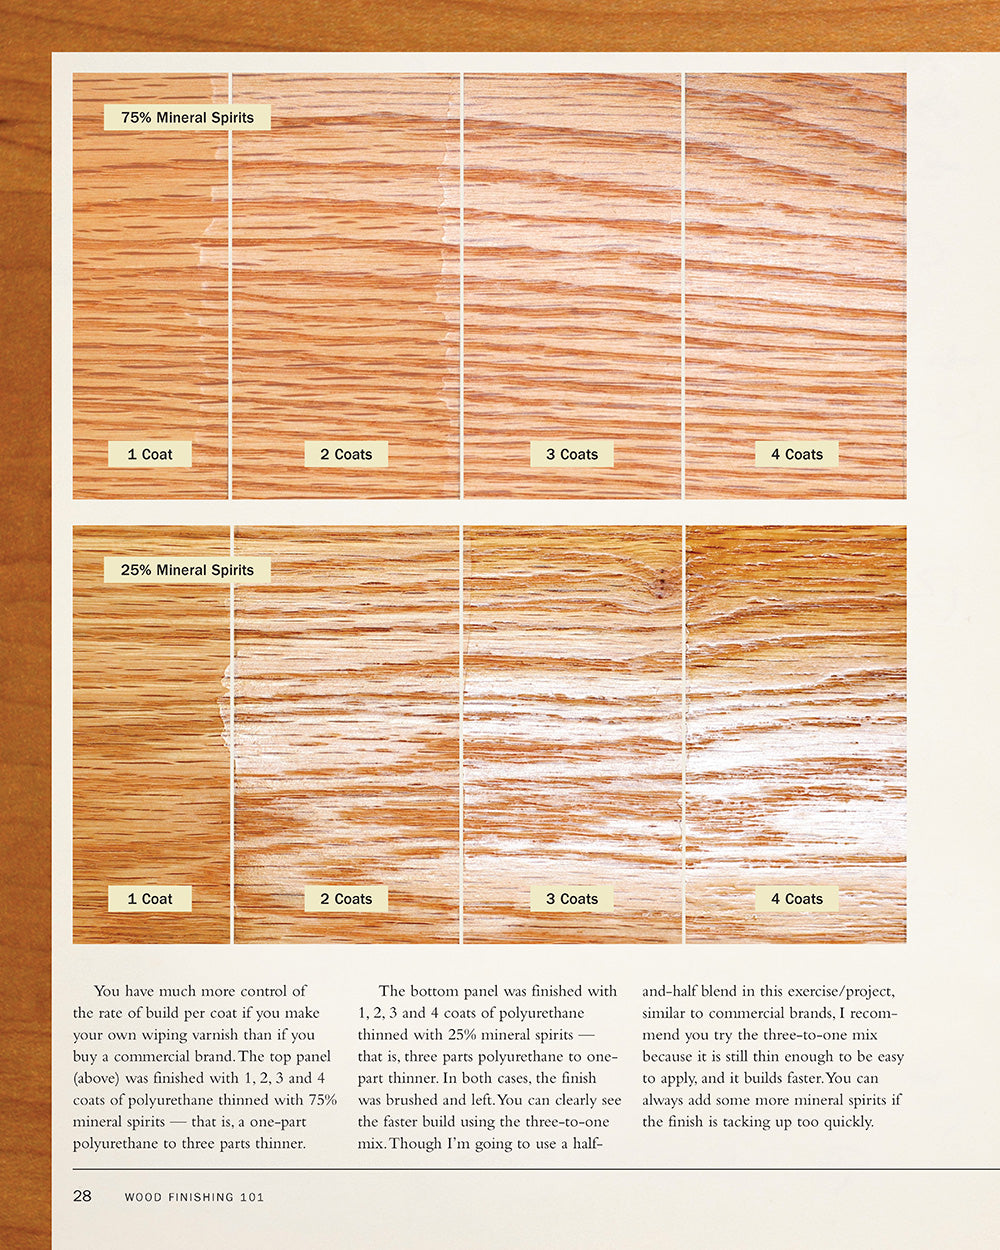 Wood Finishing 101, Revised Edition